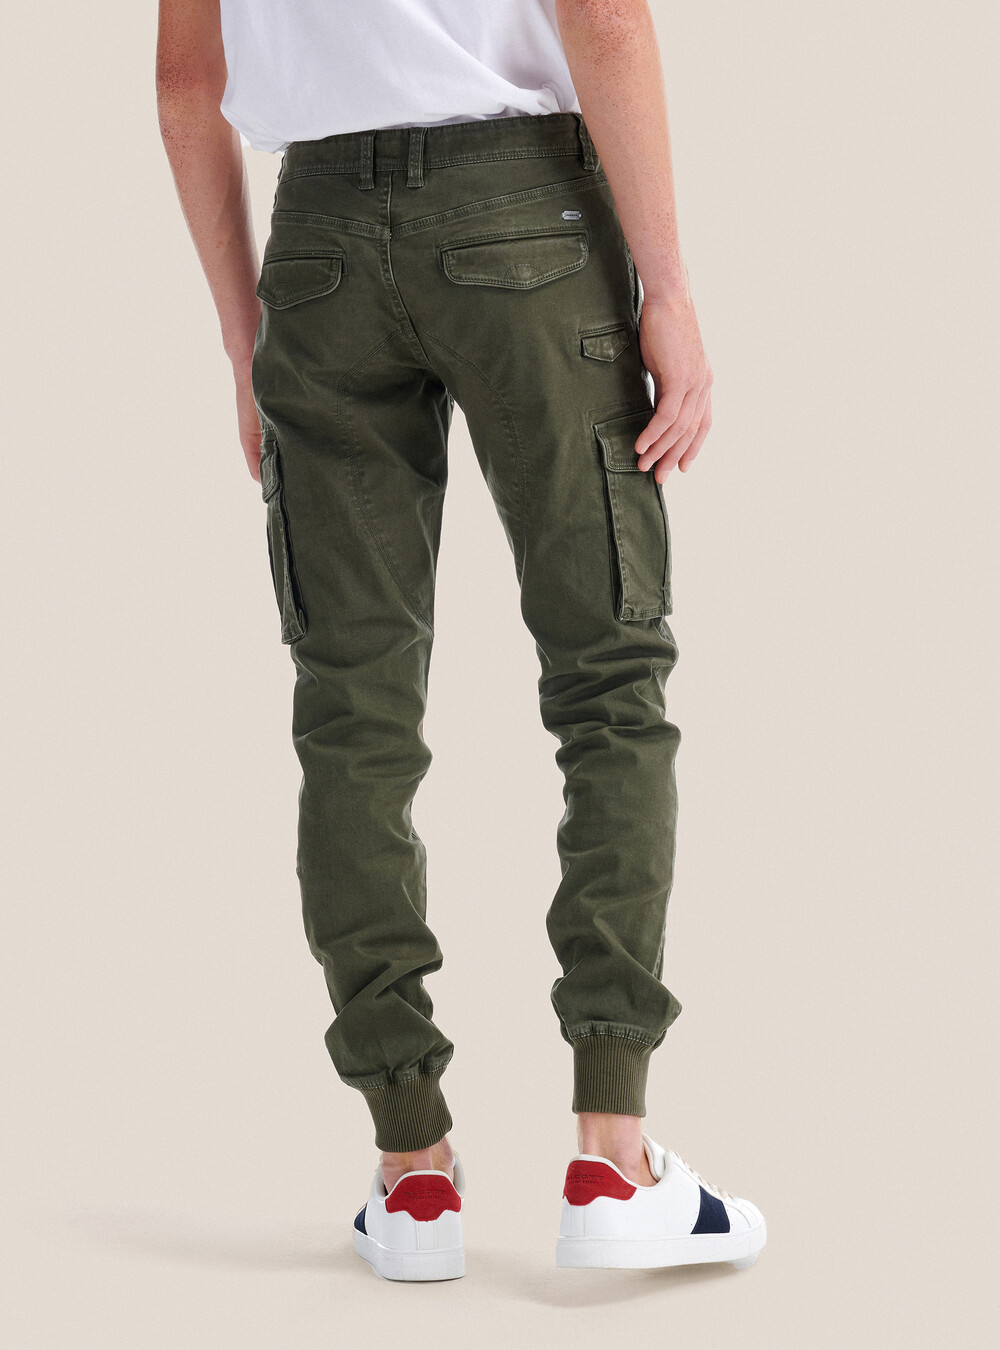 Pantalones militares con elástico